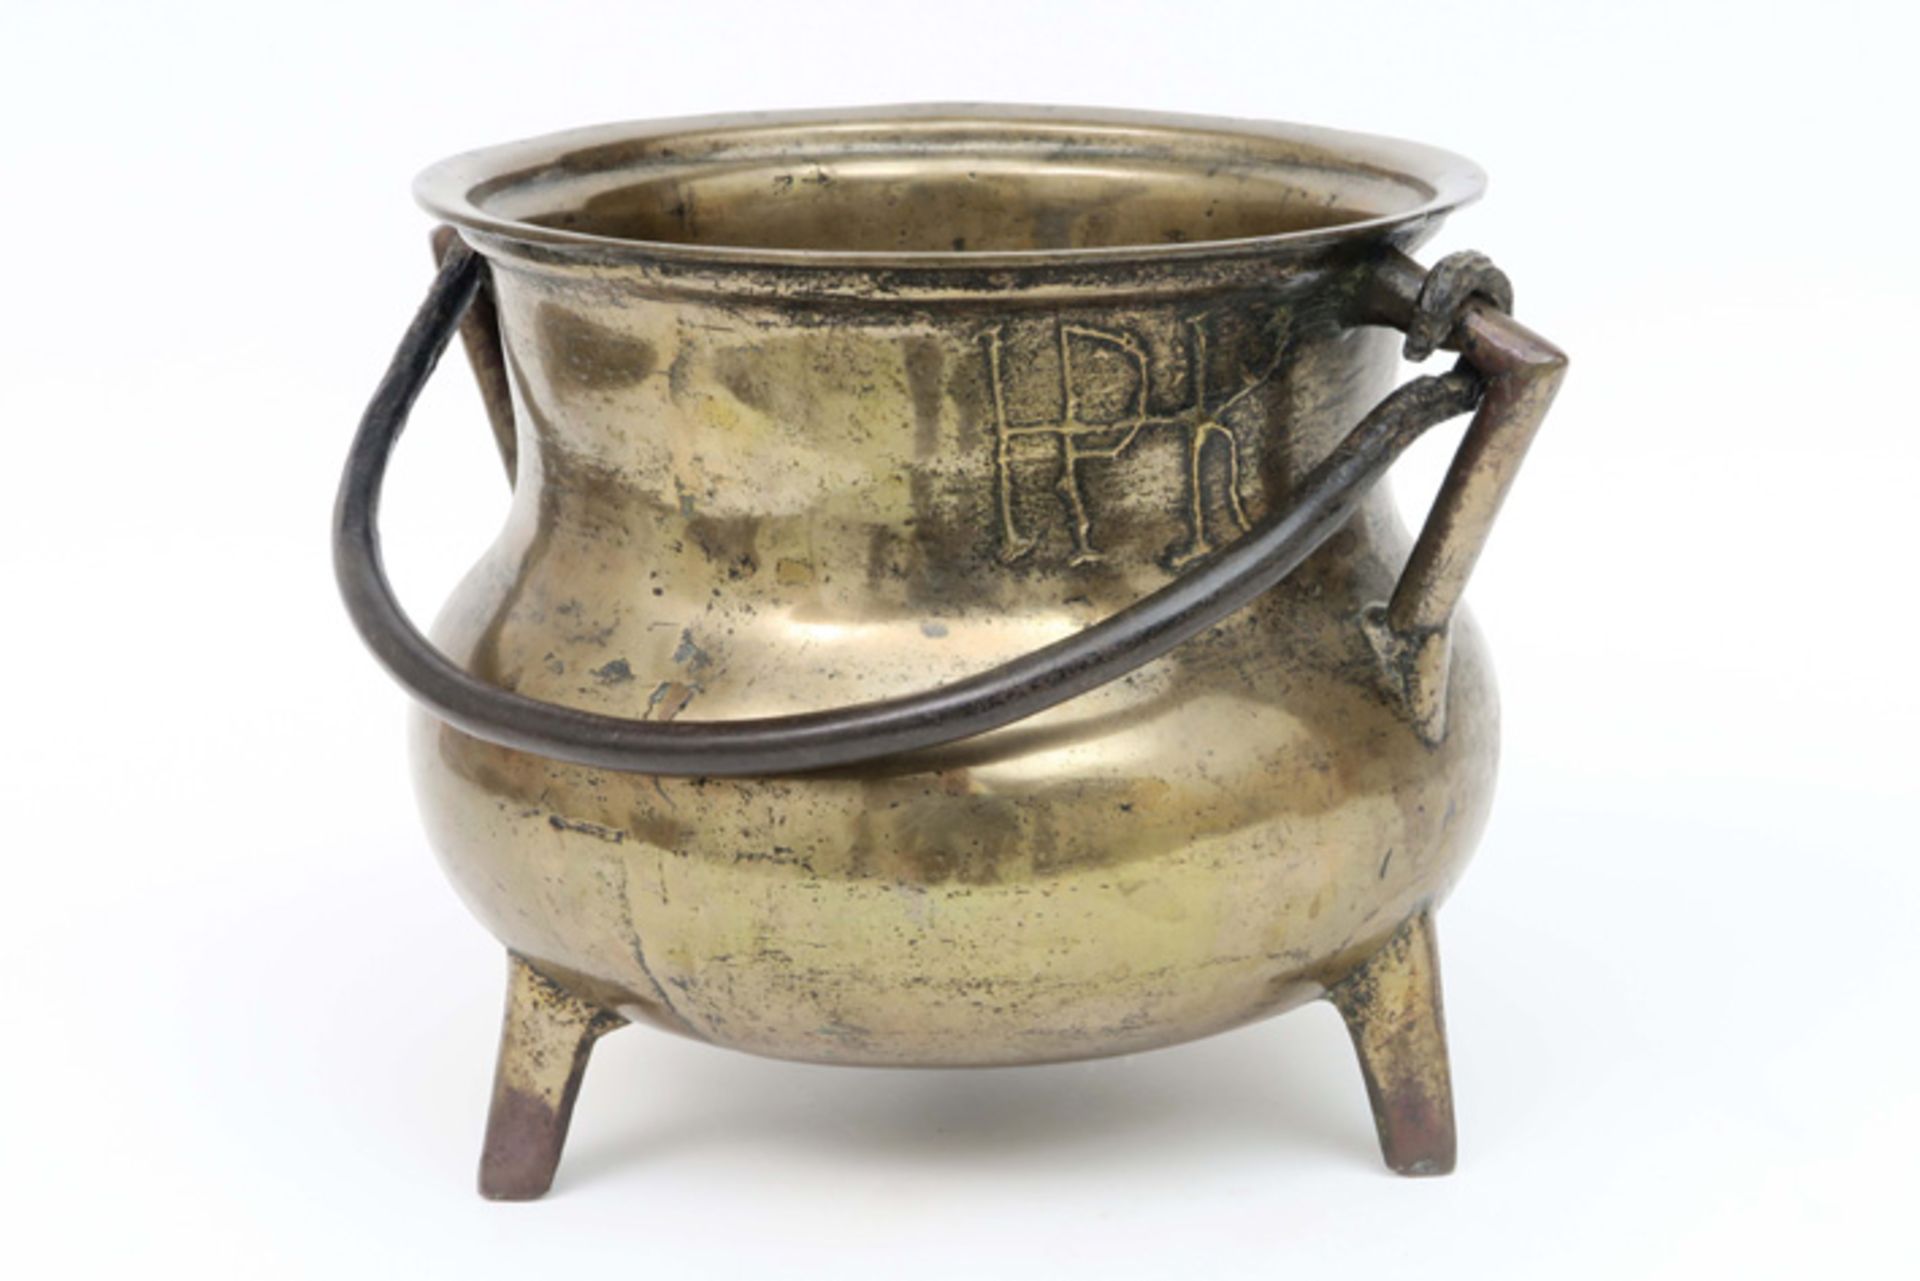 16th/17th Cent. Flemish "grape" cookingpot in bronze, marked " IPK "||VLAANDEREN - 16°/17° EEUW